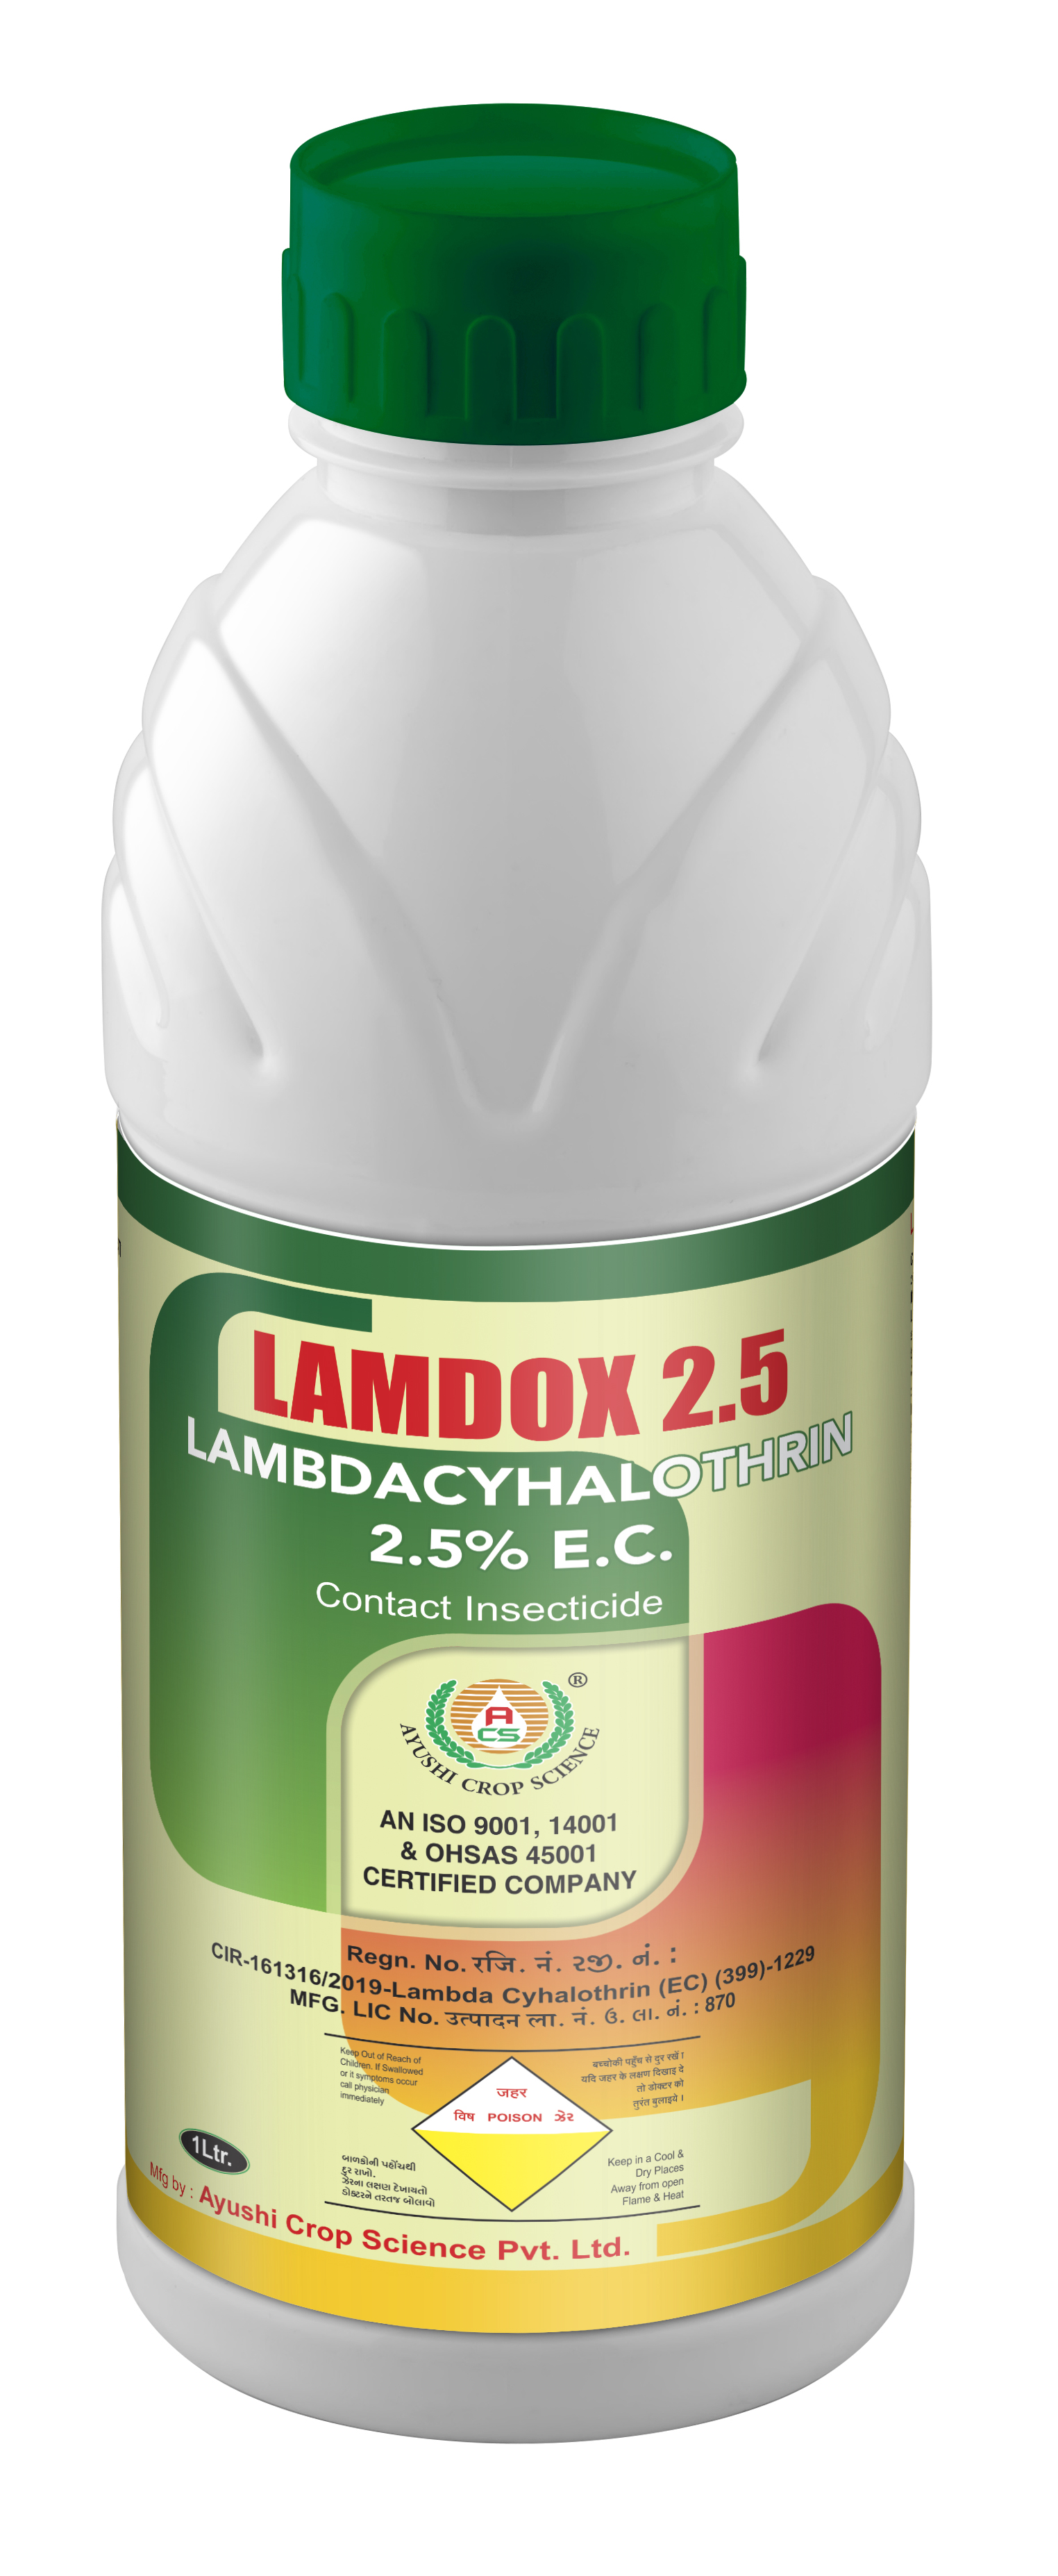 LAMDOX 2.5